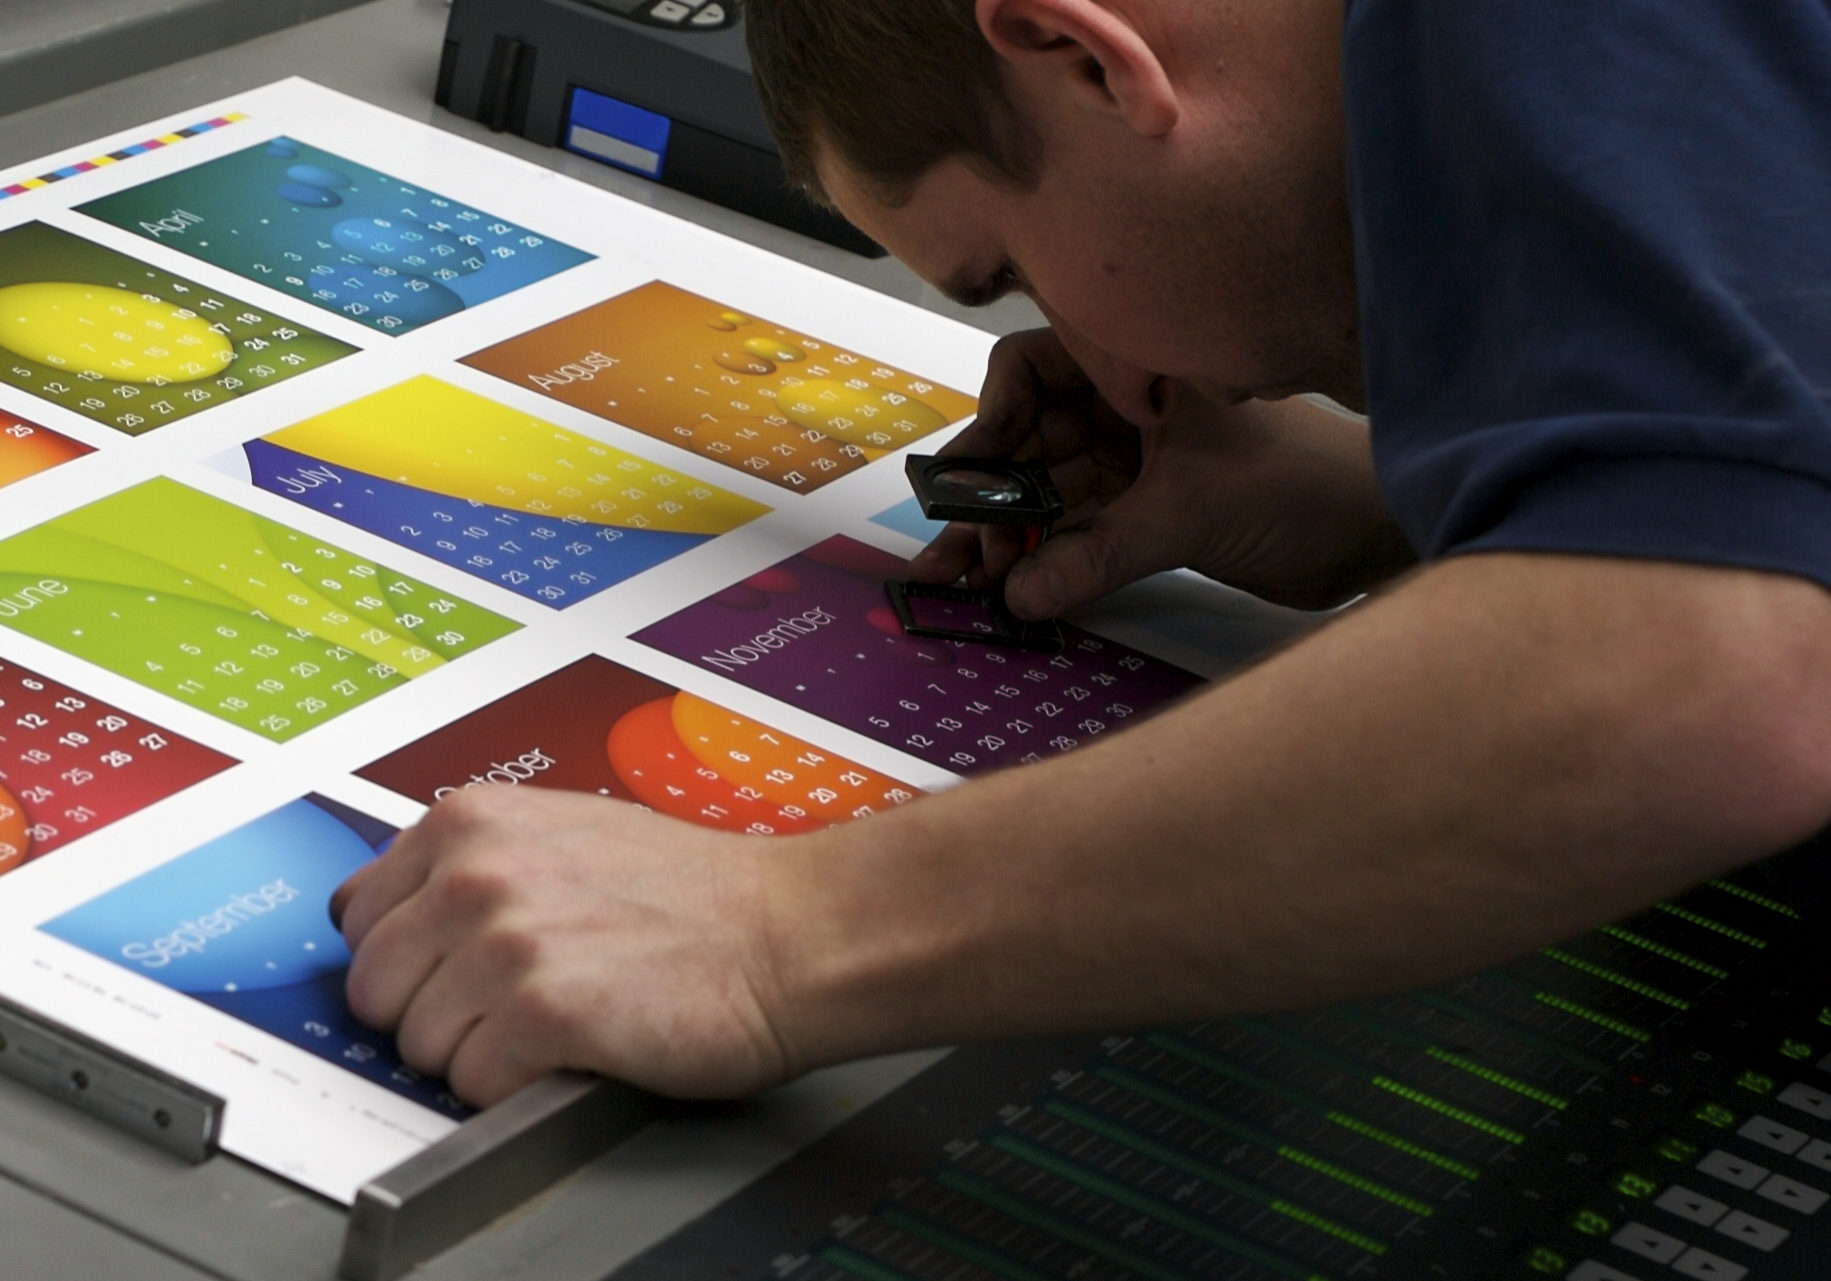 A printer checks fit on a colourful calendar sheet.